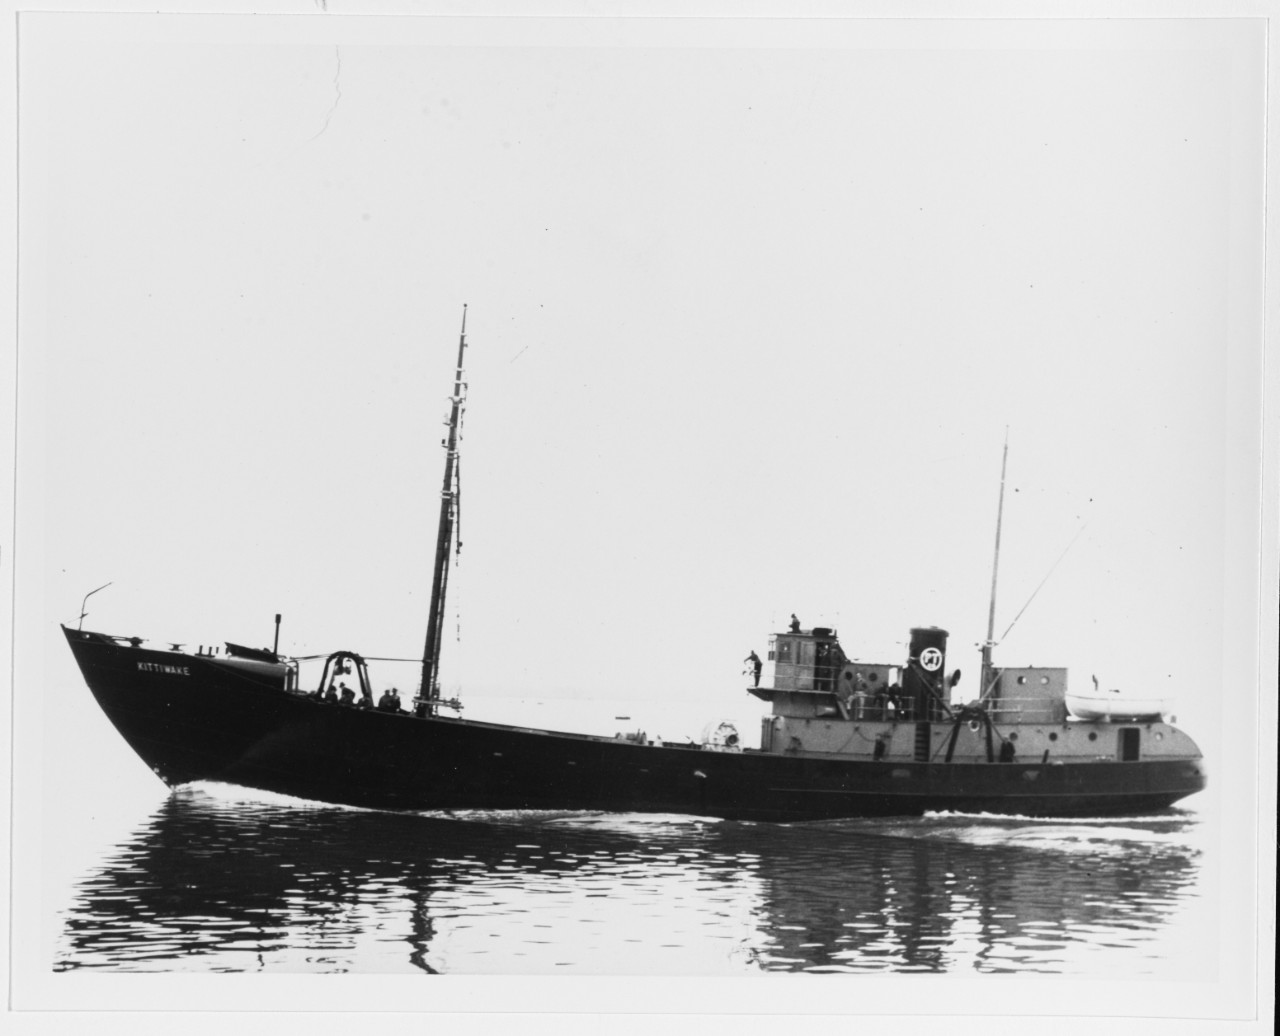 KITTIWAKE (United States Mercantile Fishing Trawler, 1937)